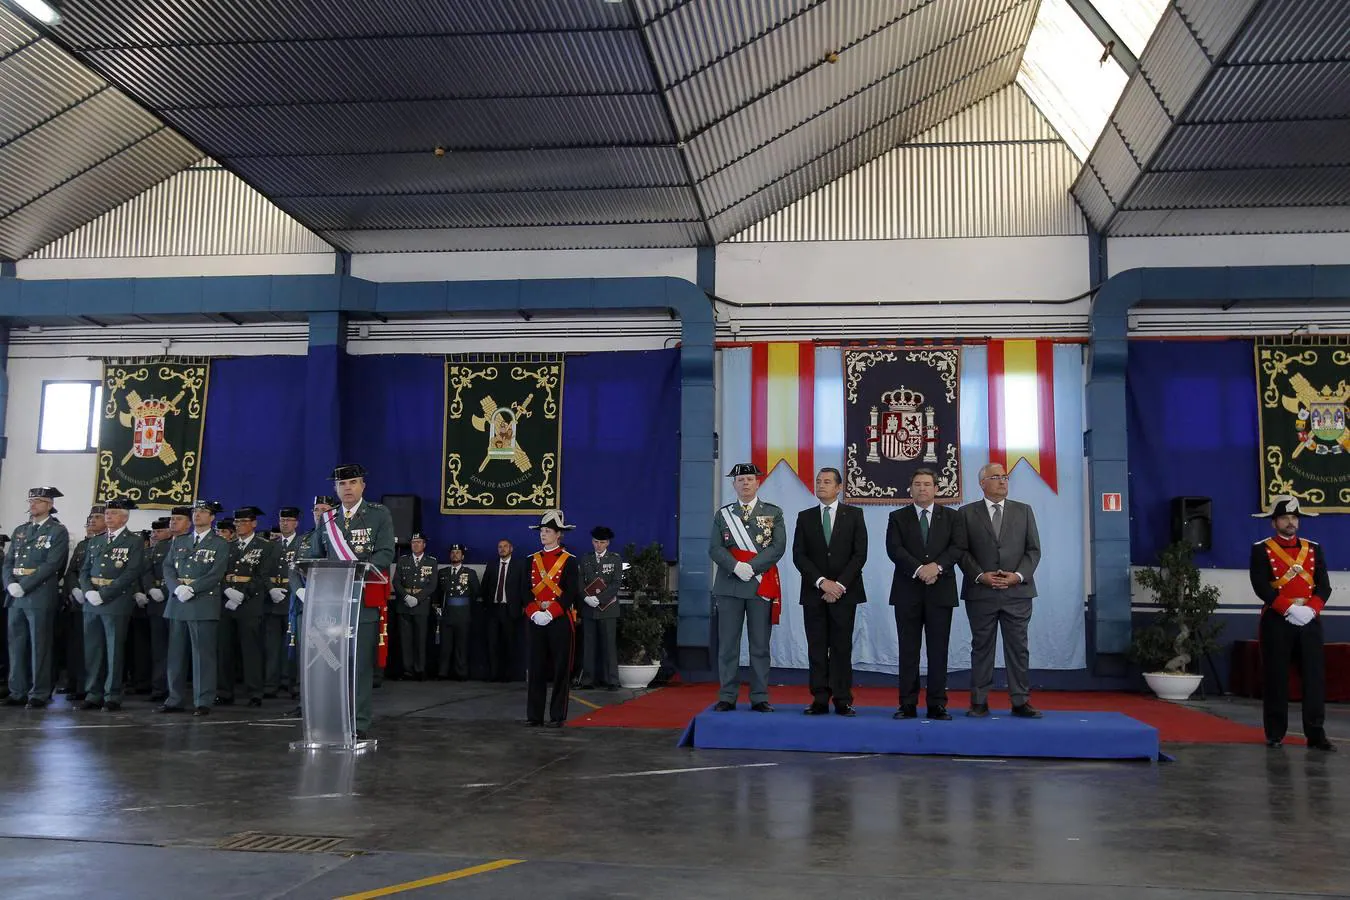 El general jefe de la IV Zona de la Guardia Civil, Manuel Contreras, durante su discurso